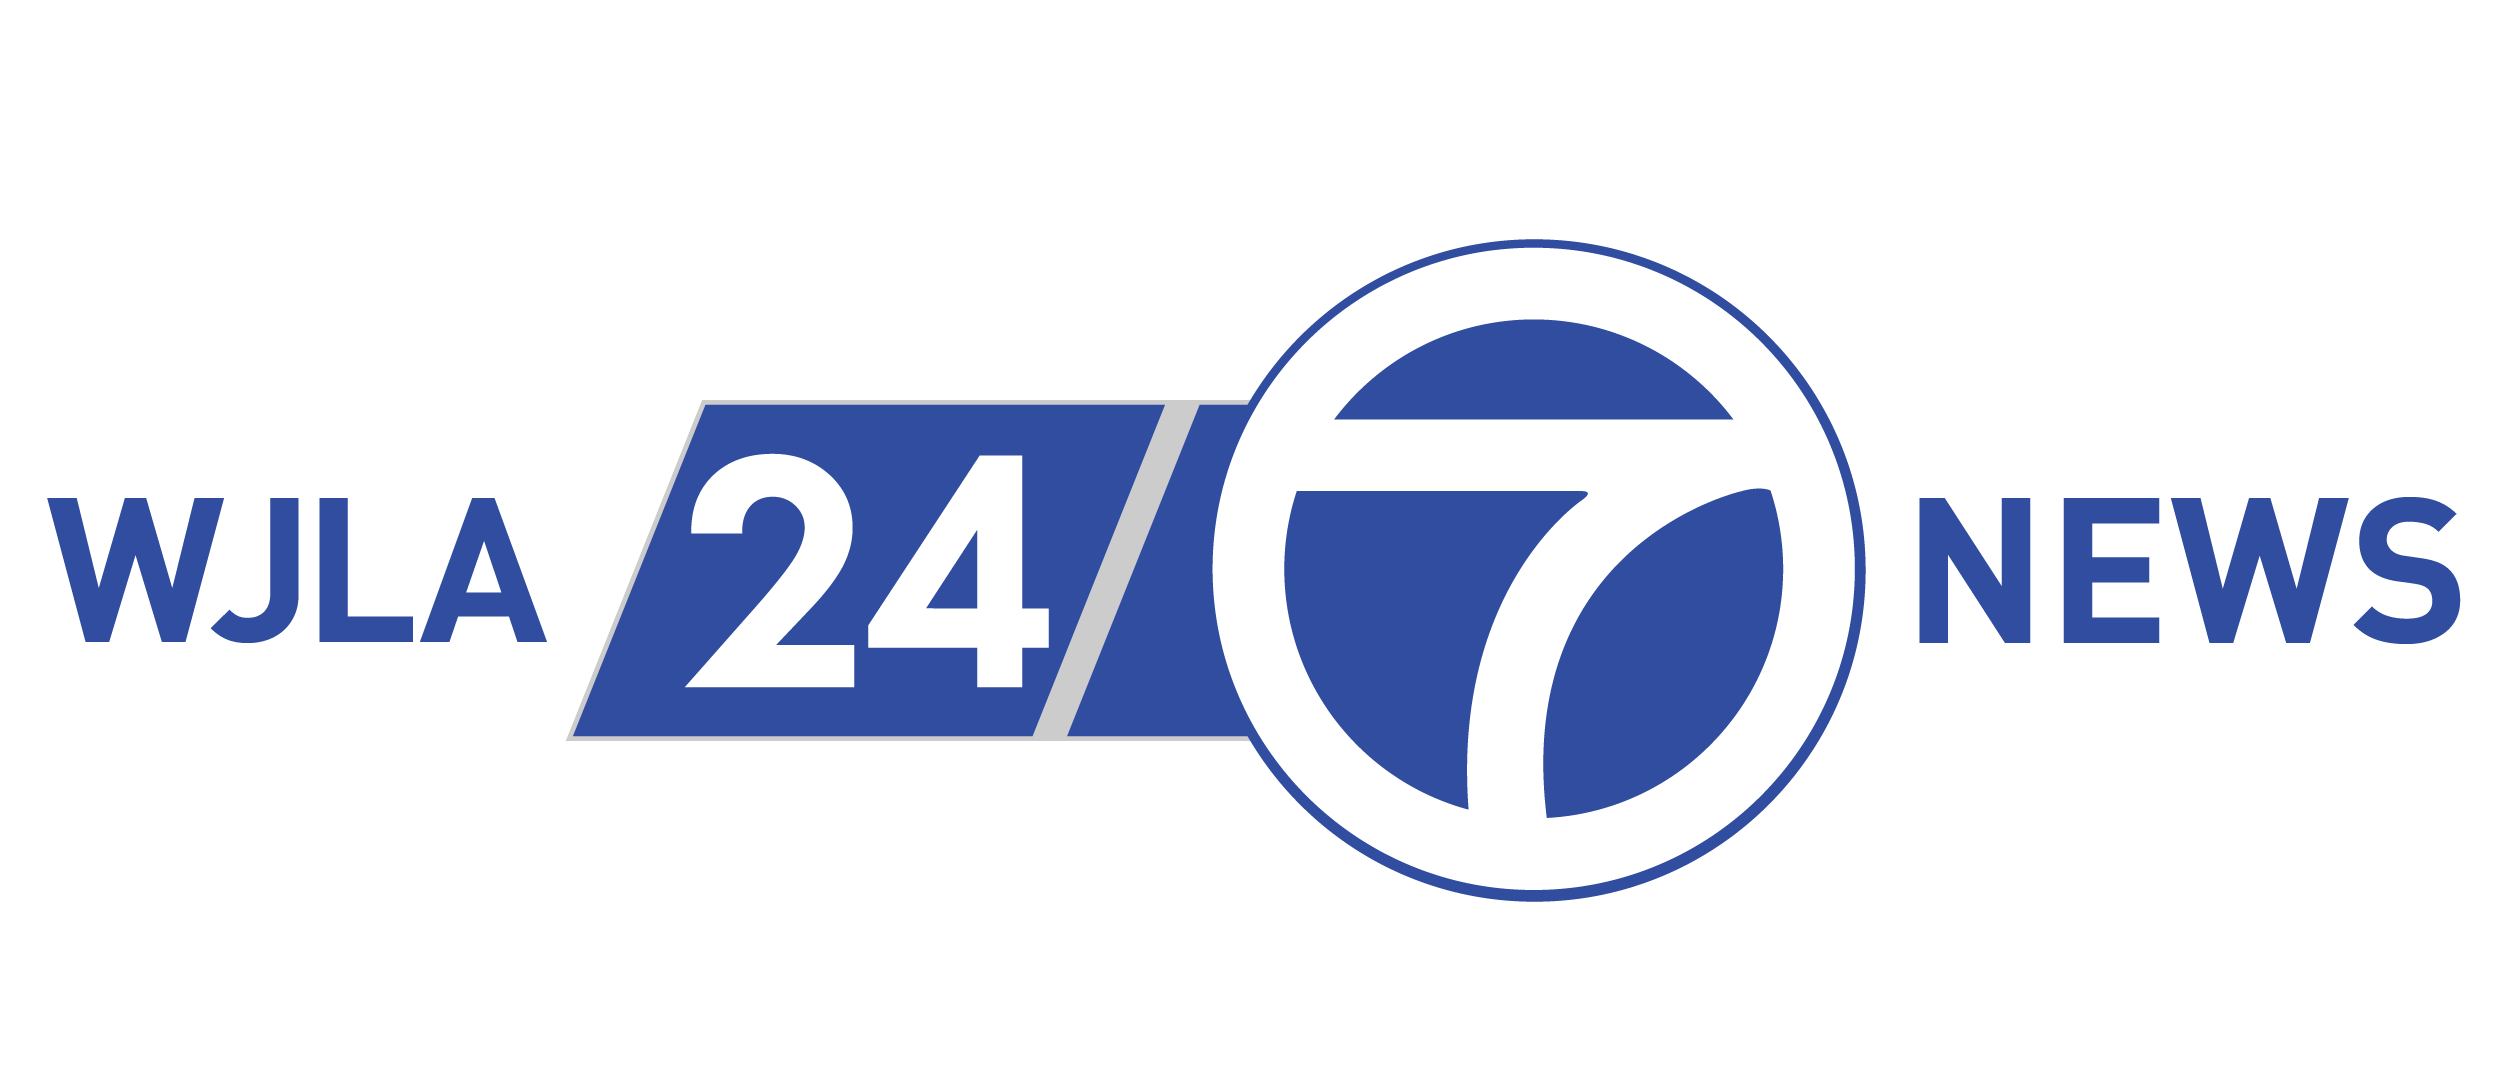 7 ньюс. 24/7 Лого. News 24/7. Новости 24/7 логотип. Гидравлика 24/7 логотип.